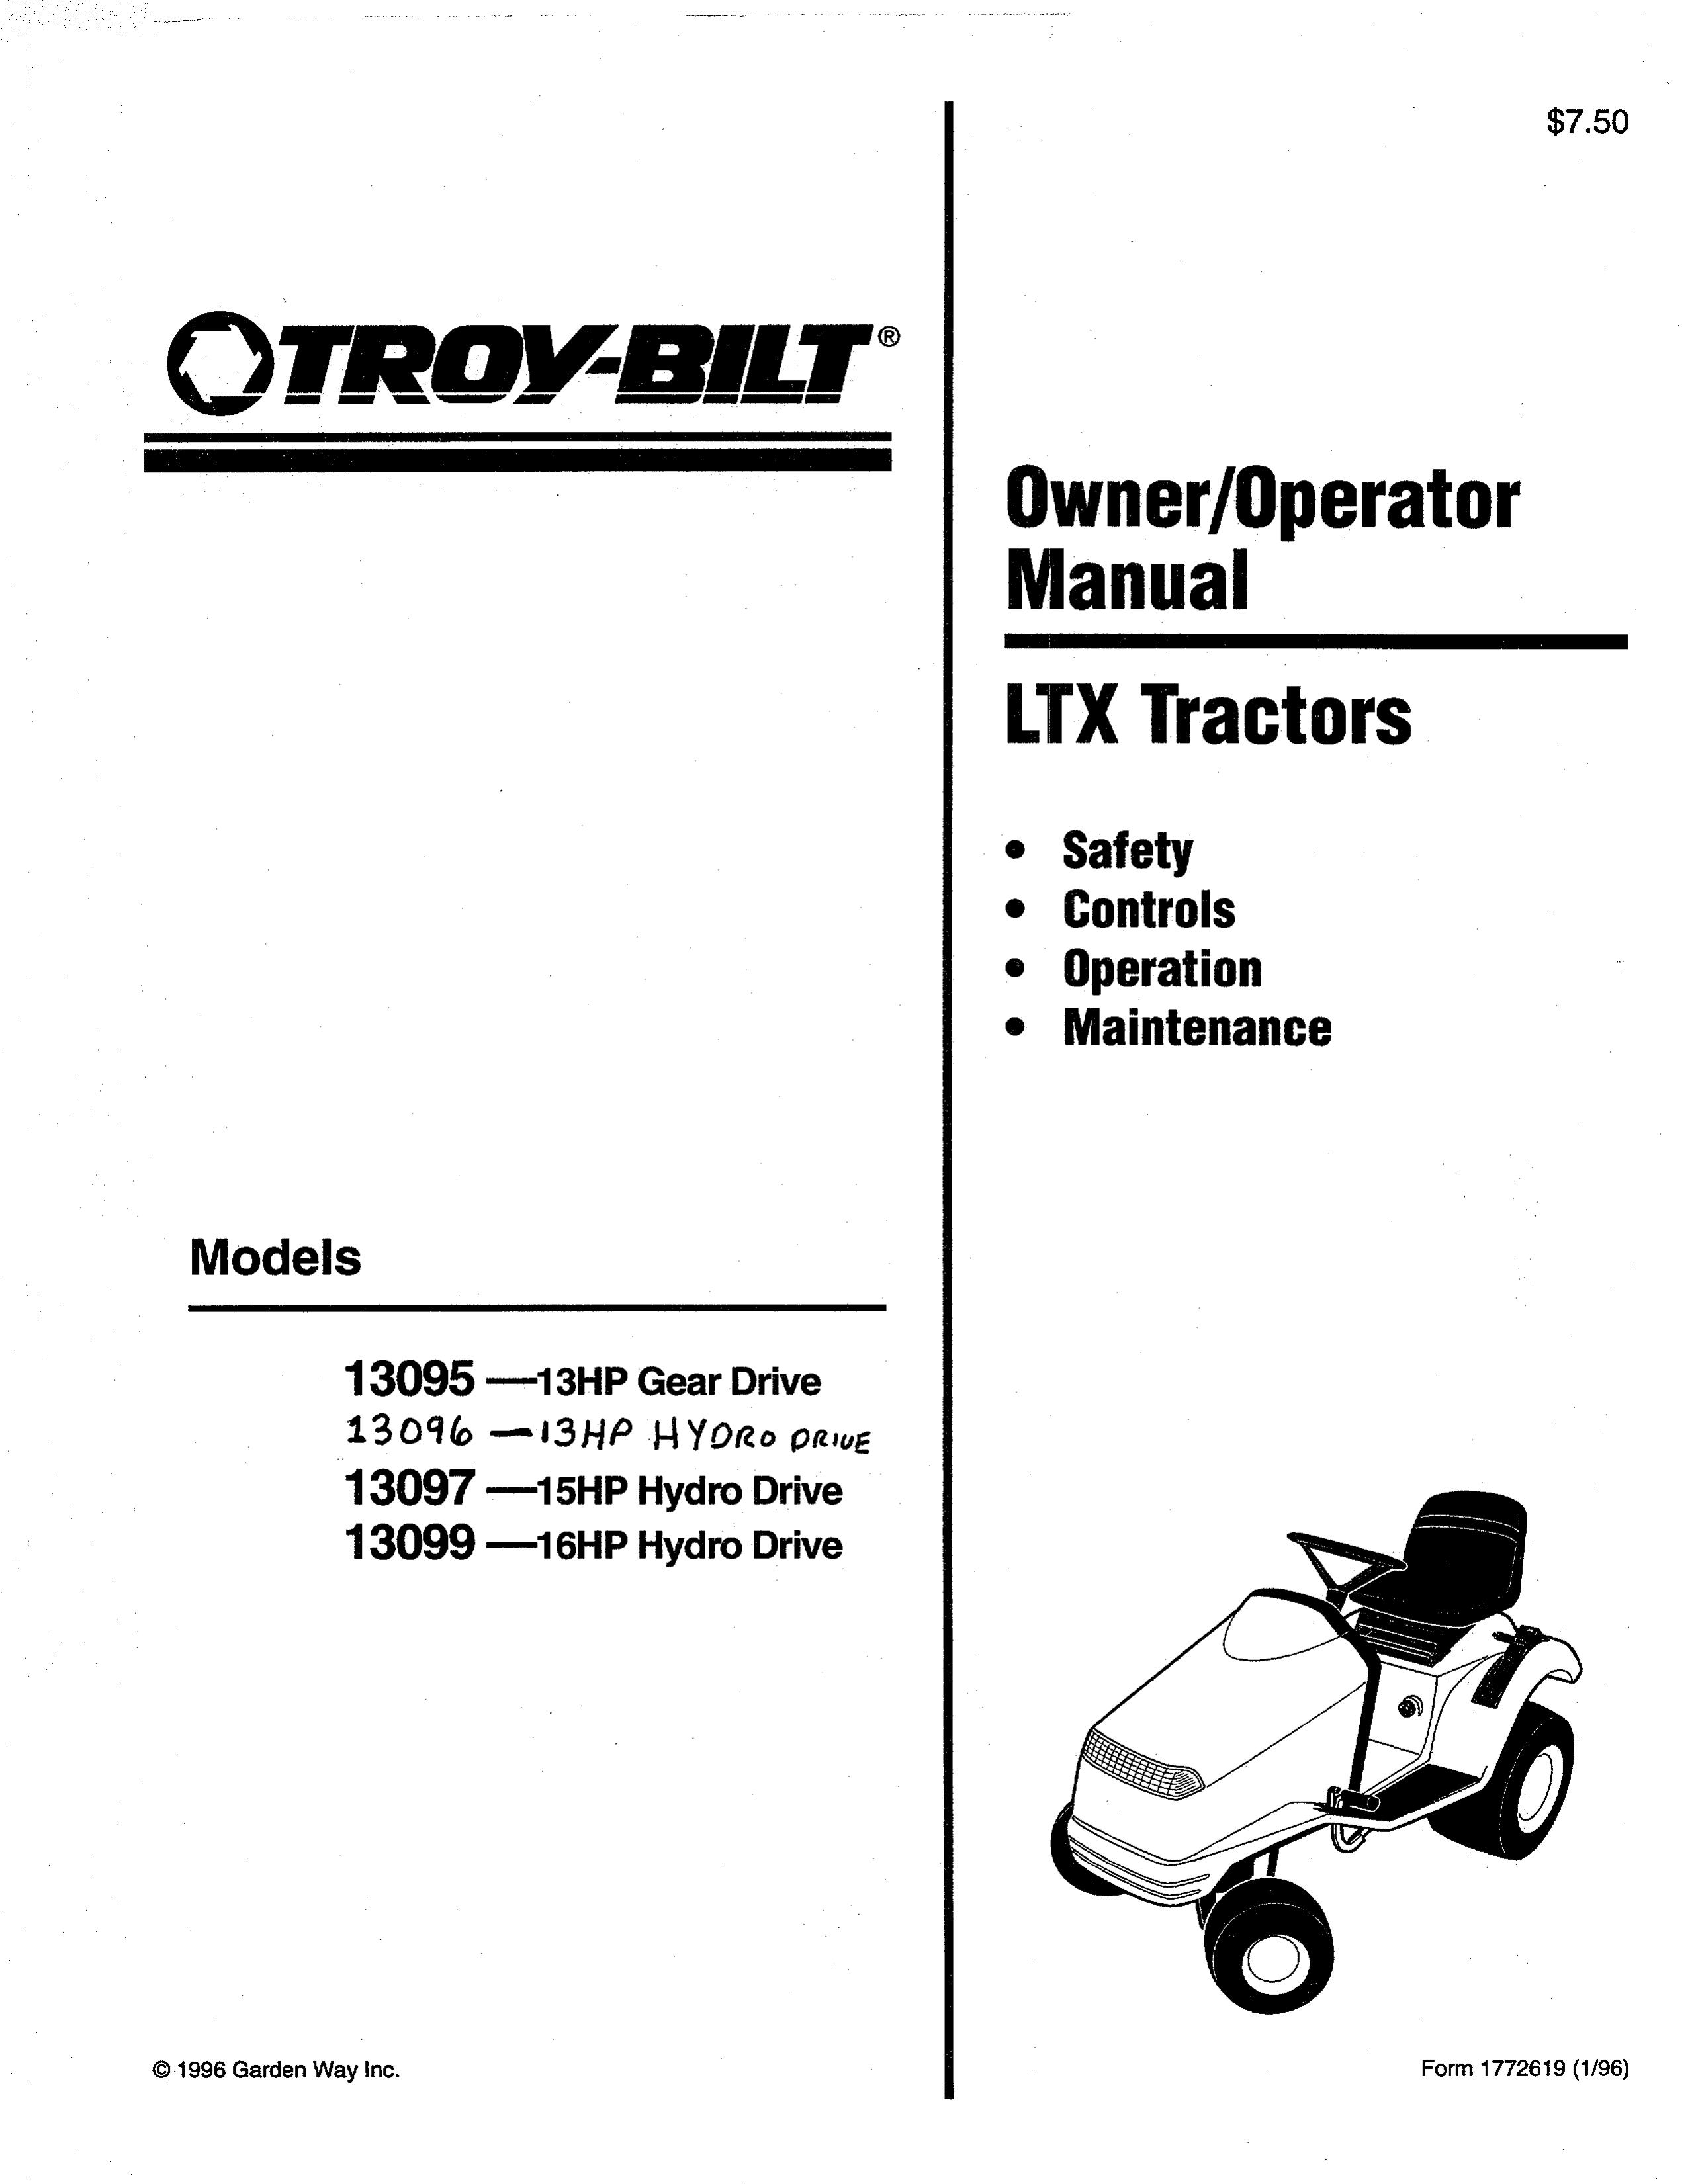 Troy-Bilt 13099 Lawn Mower User Manual